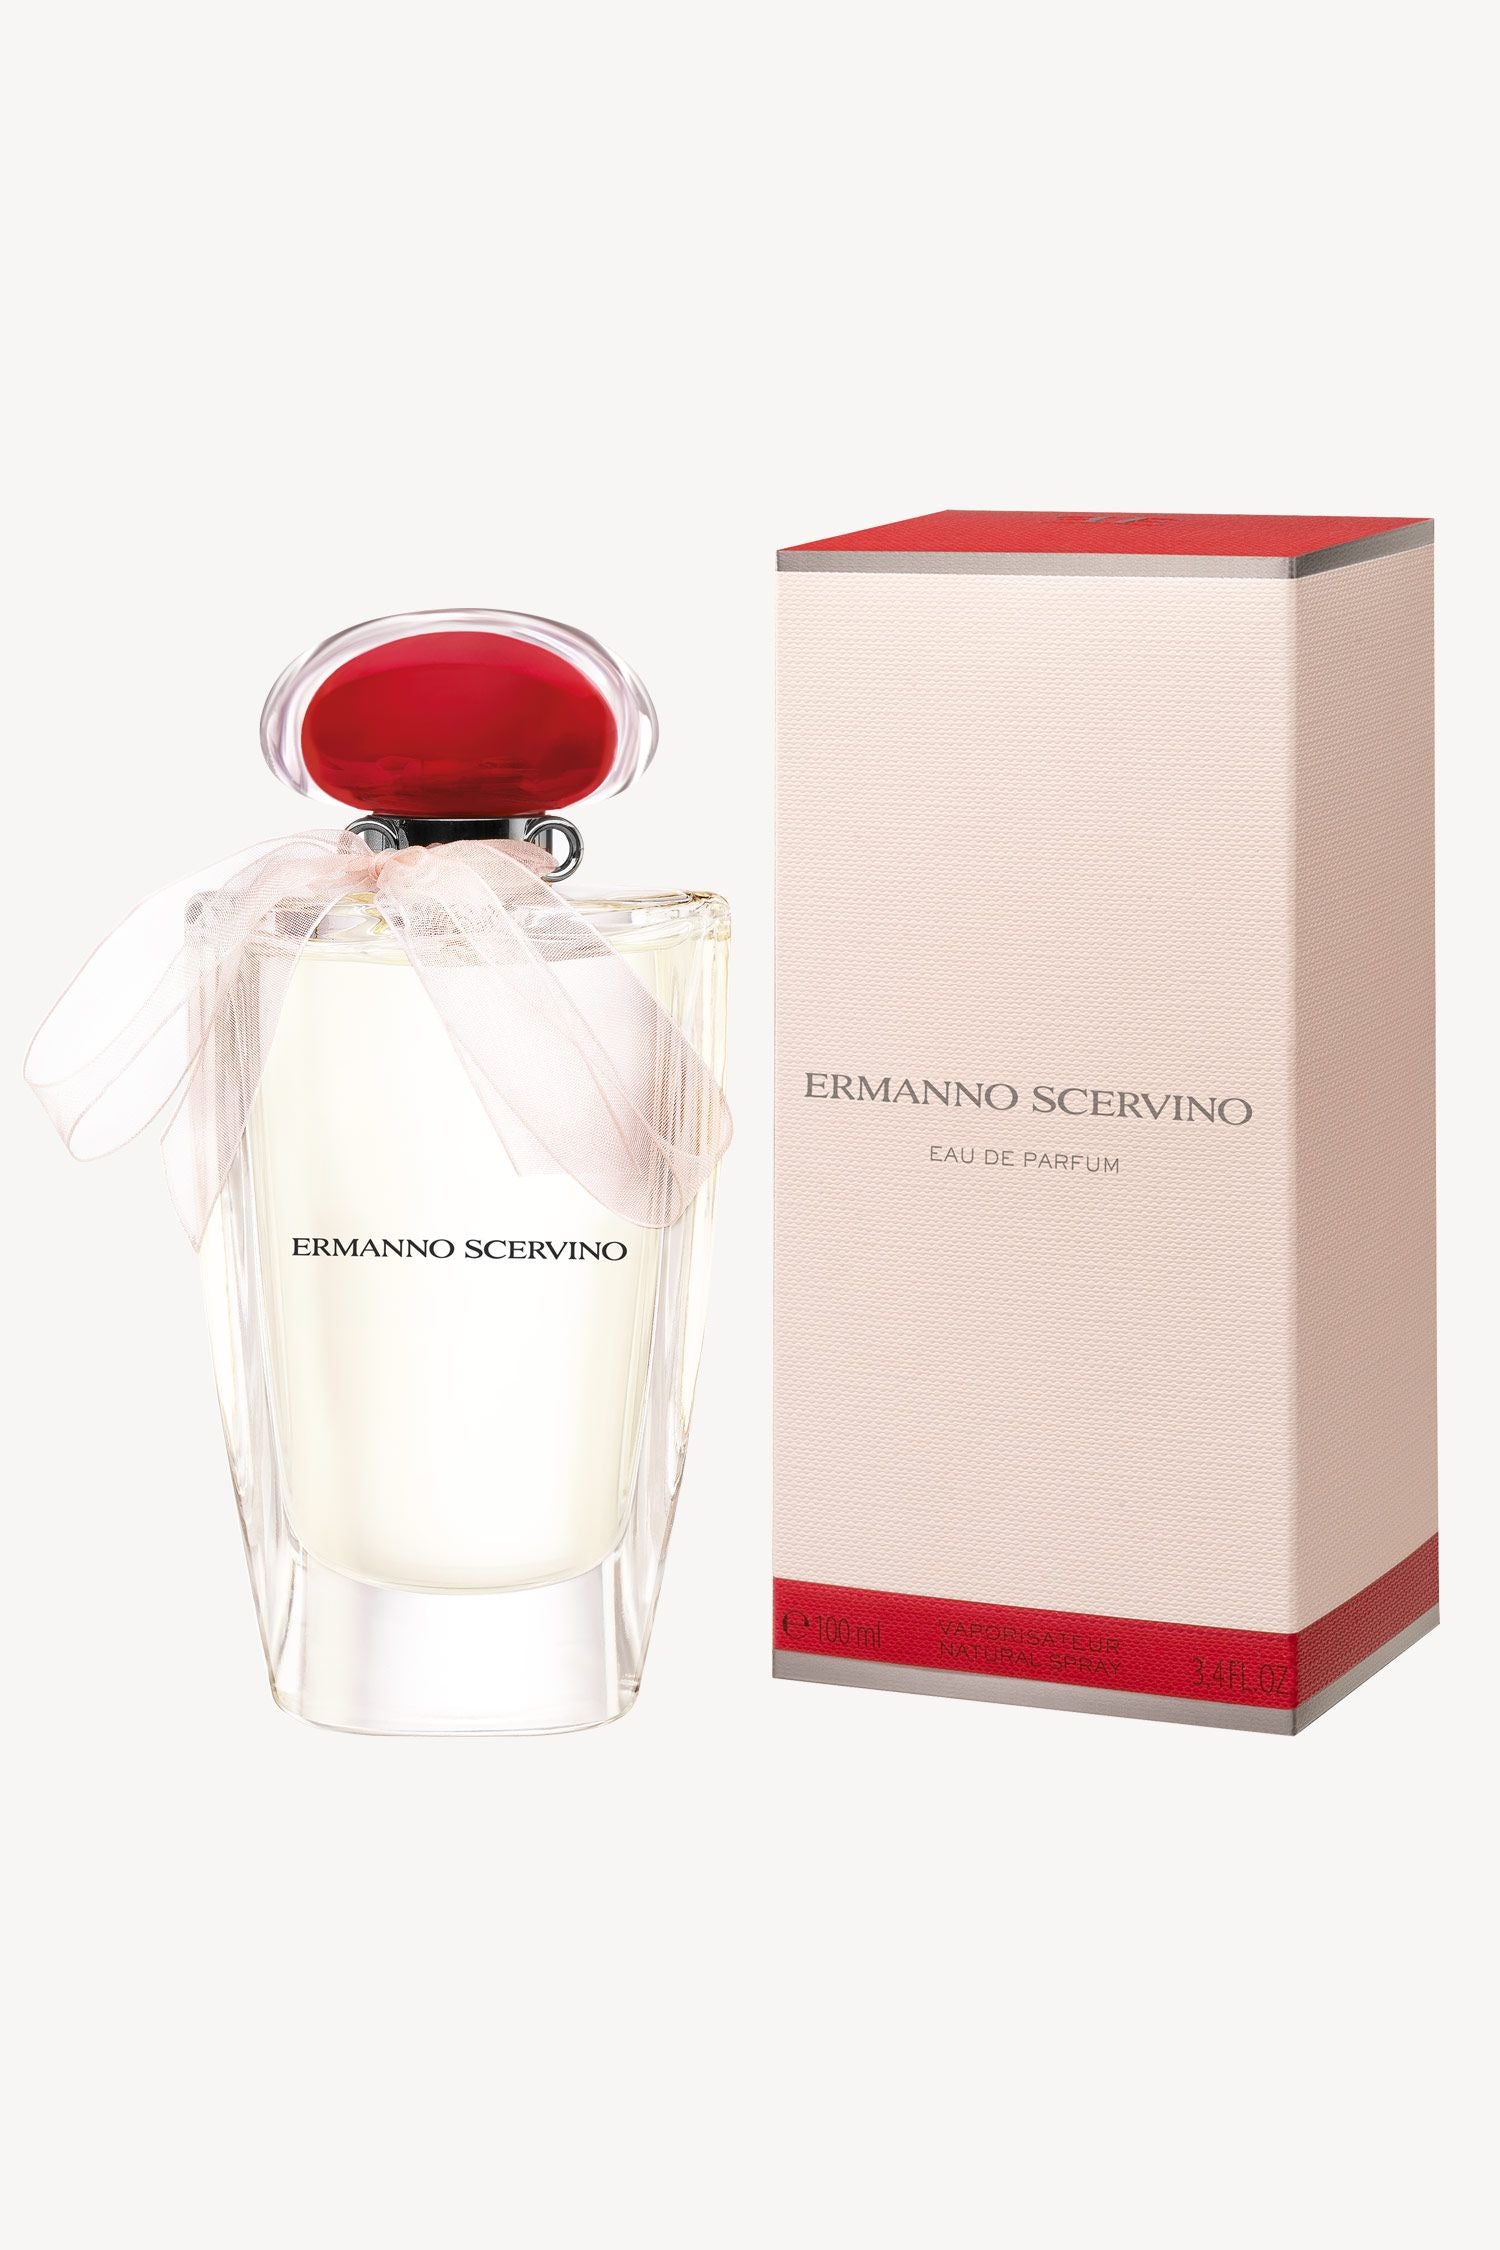 Ermanno Scervino Eau De Parfume - RossoLaccaStore